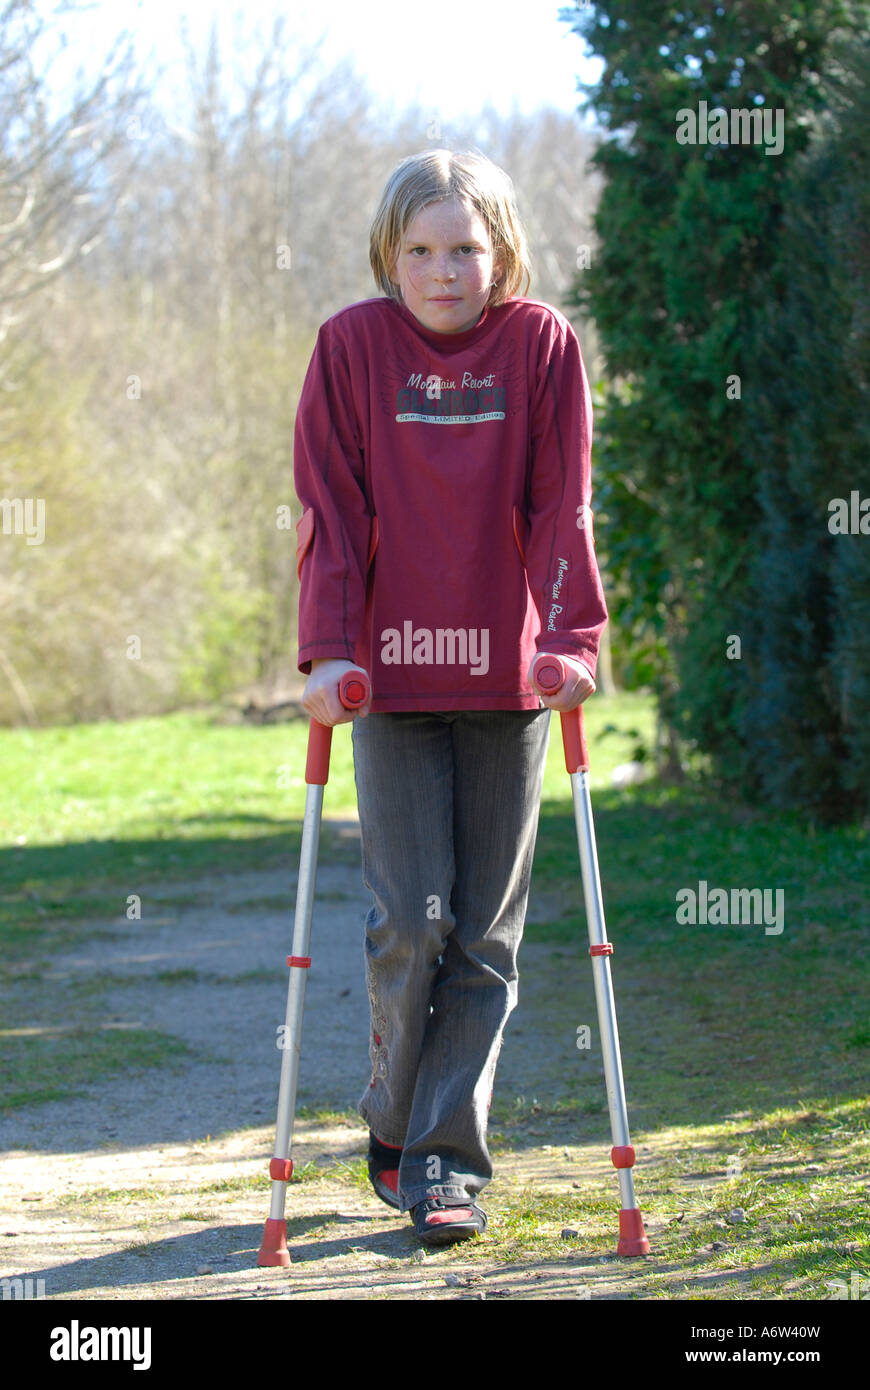 Niño de pie con muletas y sonriente Fotografía de stock - Alamy